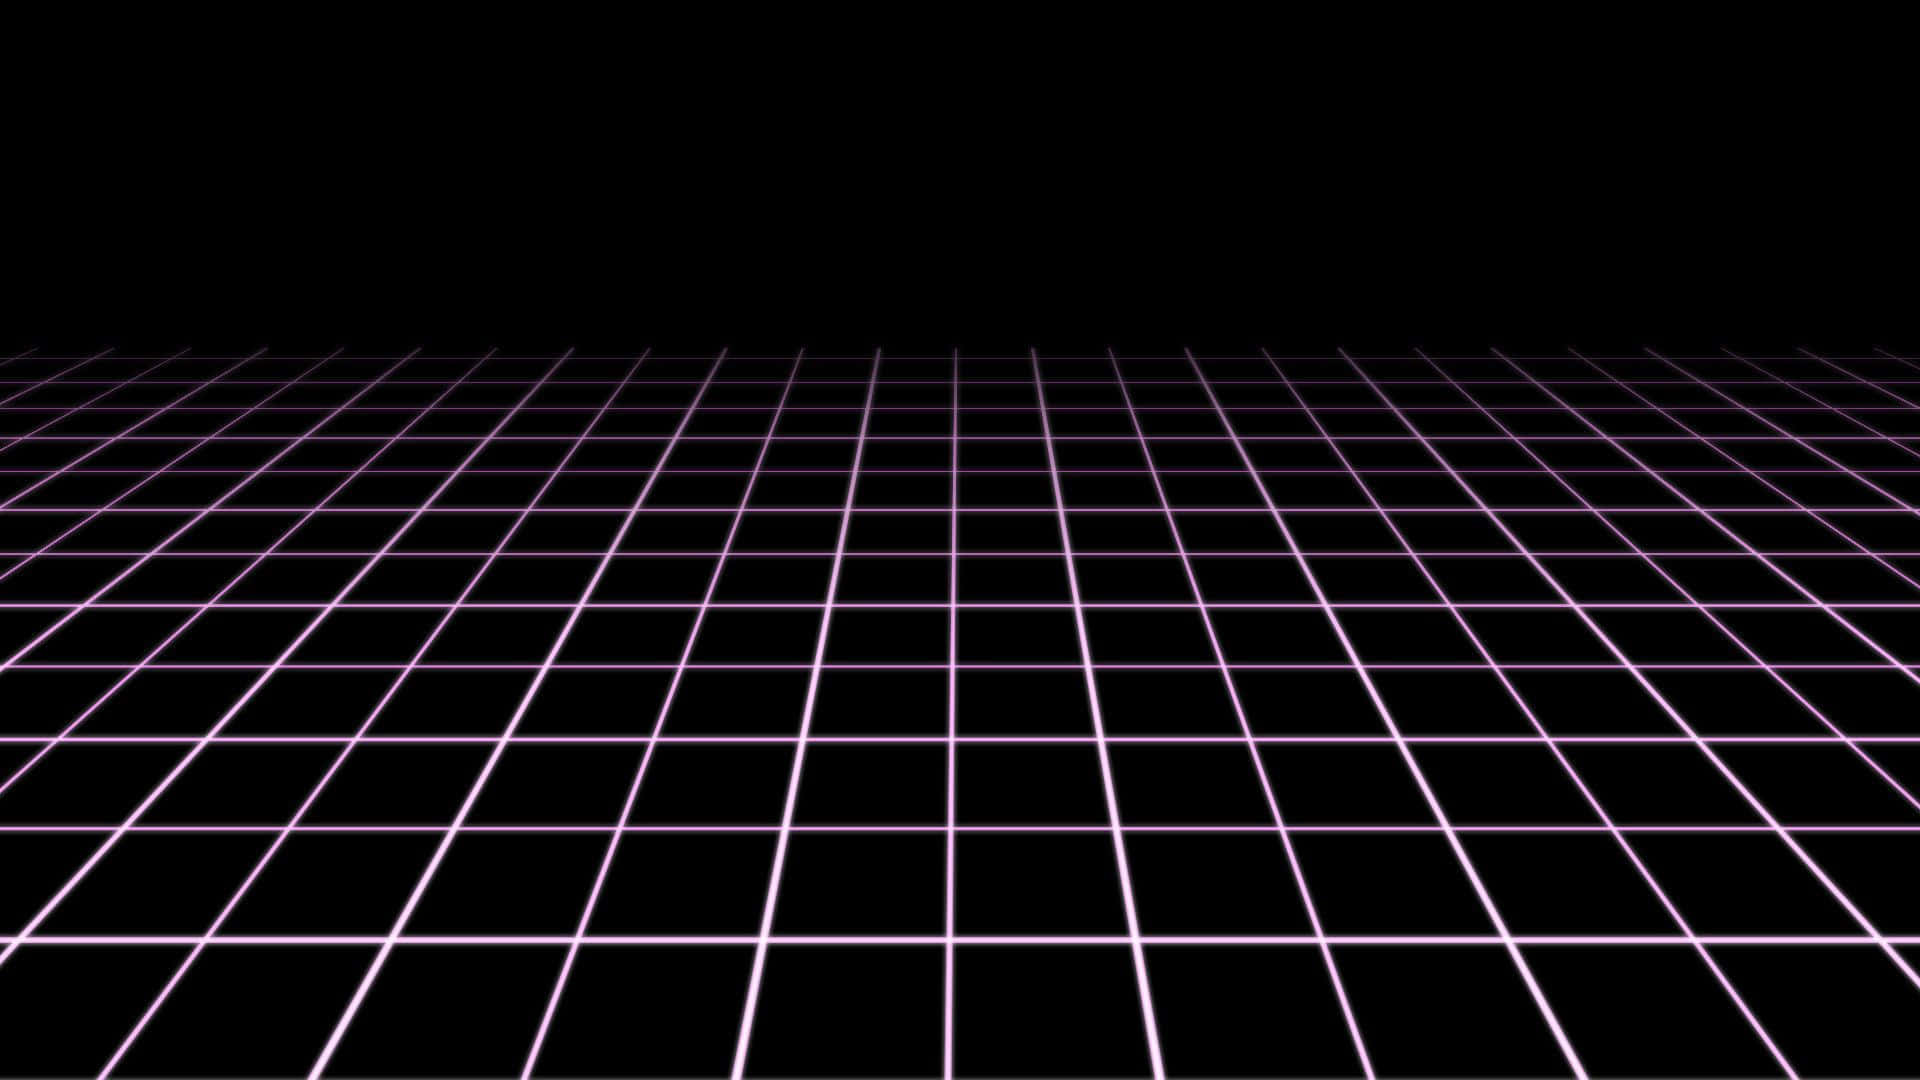 Imagemem Grid De 1920 X 1080 Pixels.